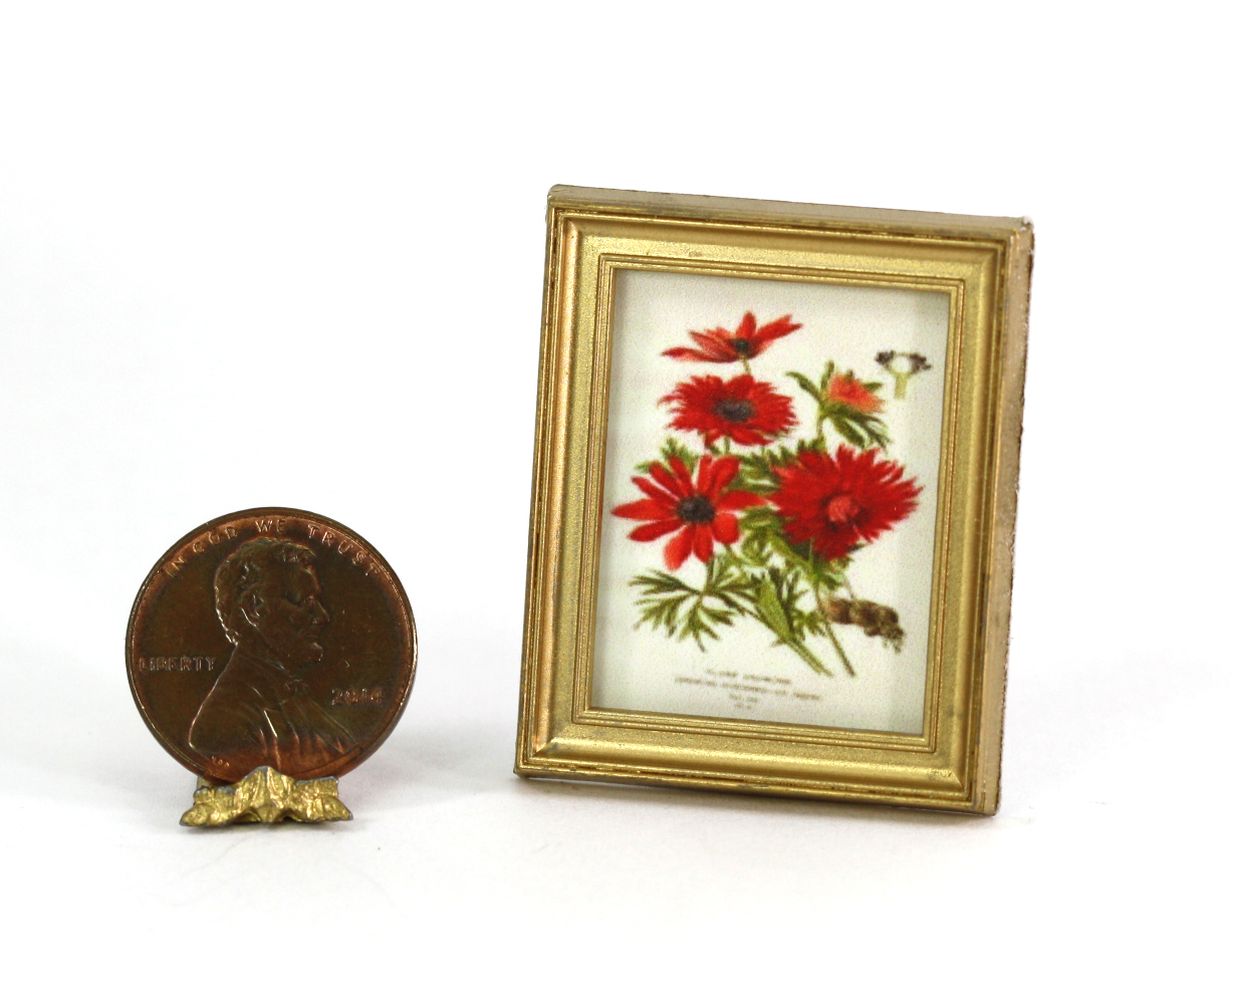 Gold Framed Print of a Vintage Style Red Floral Botanical Illustration